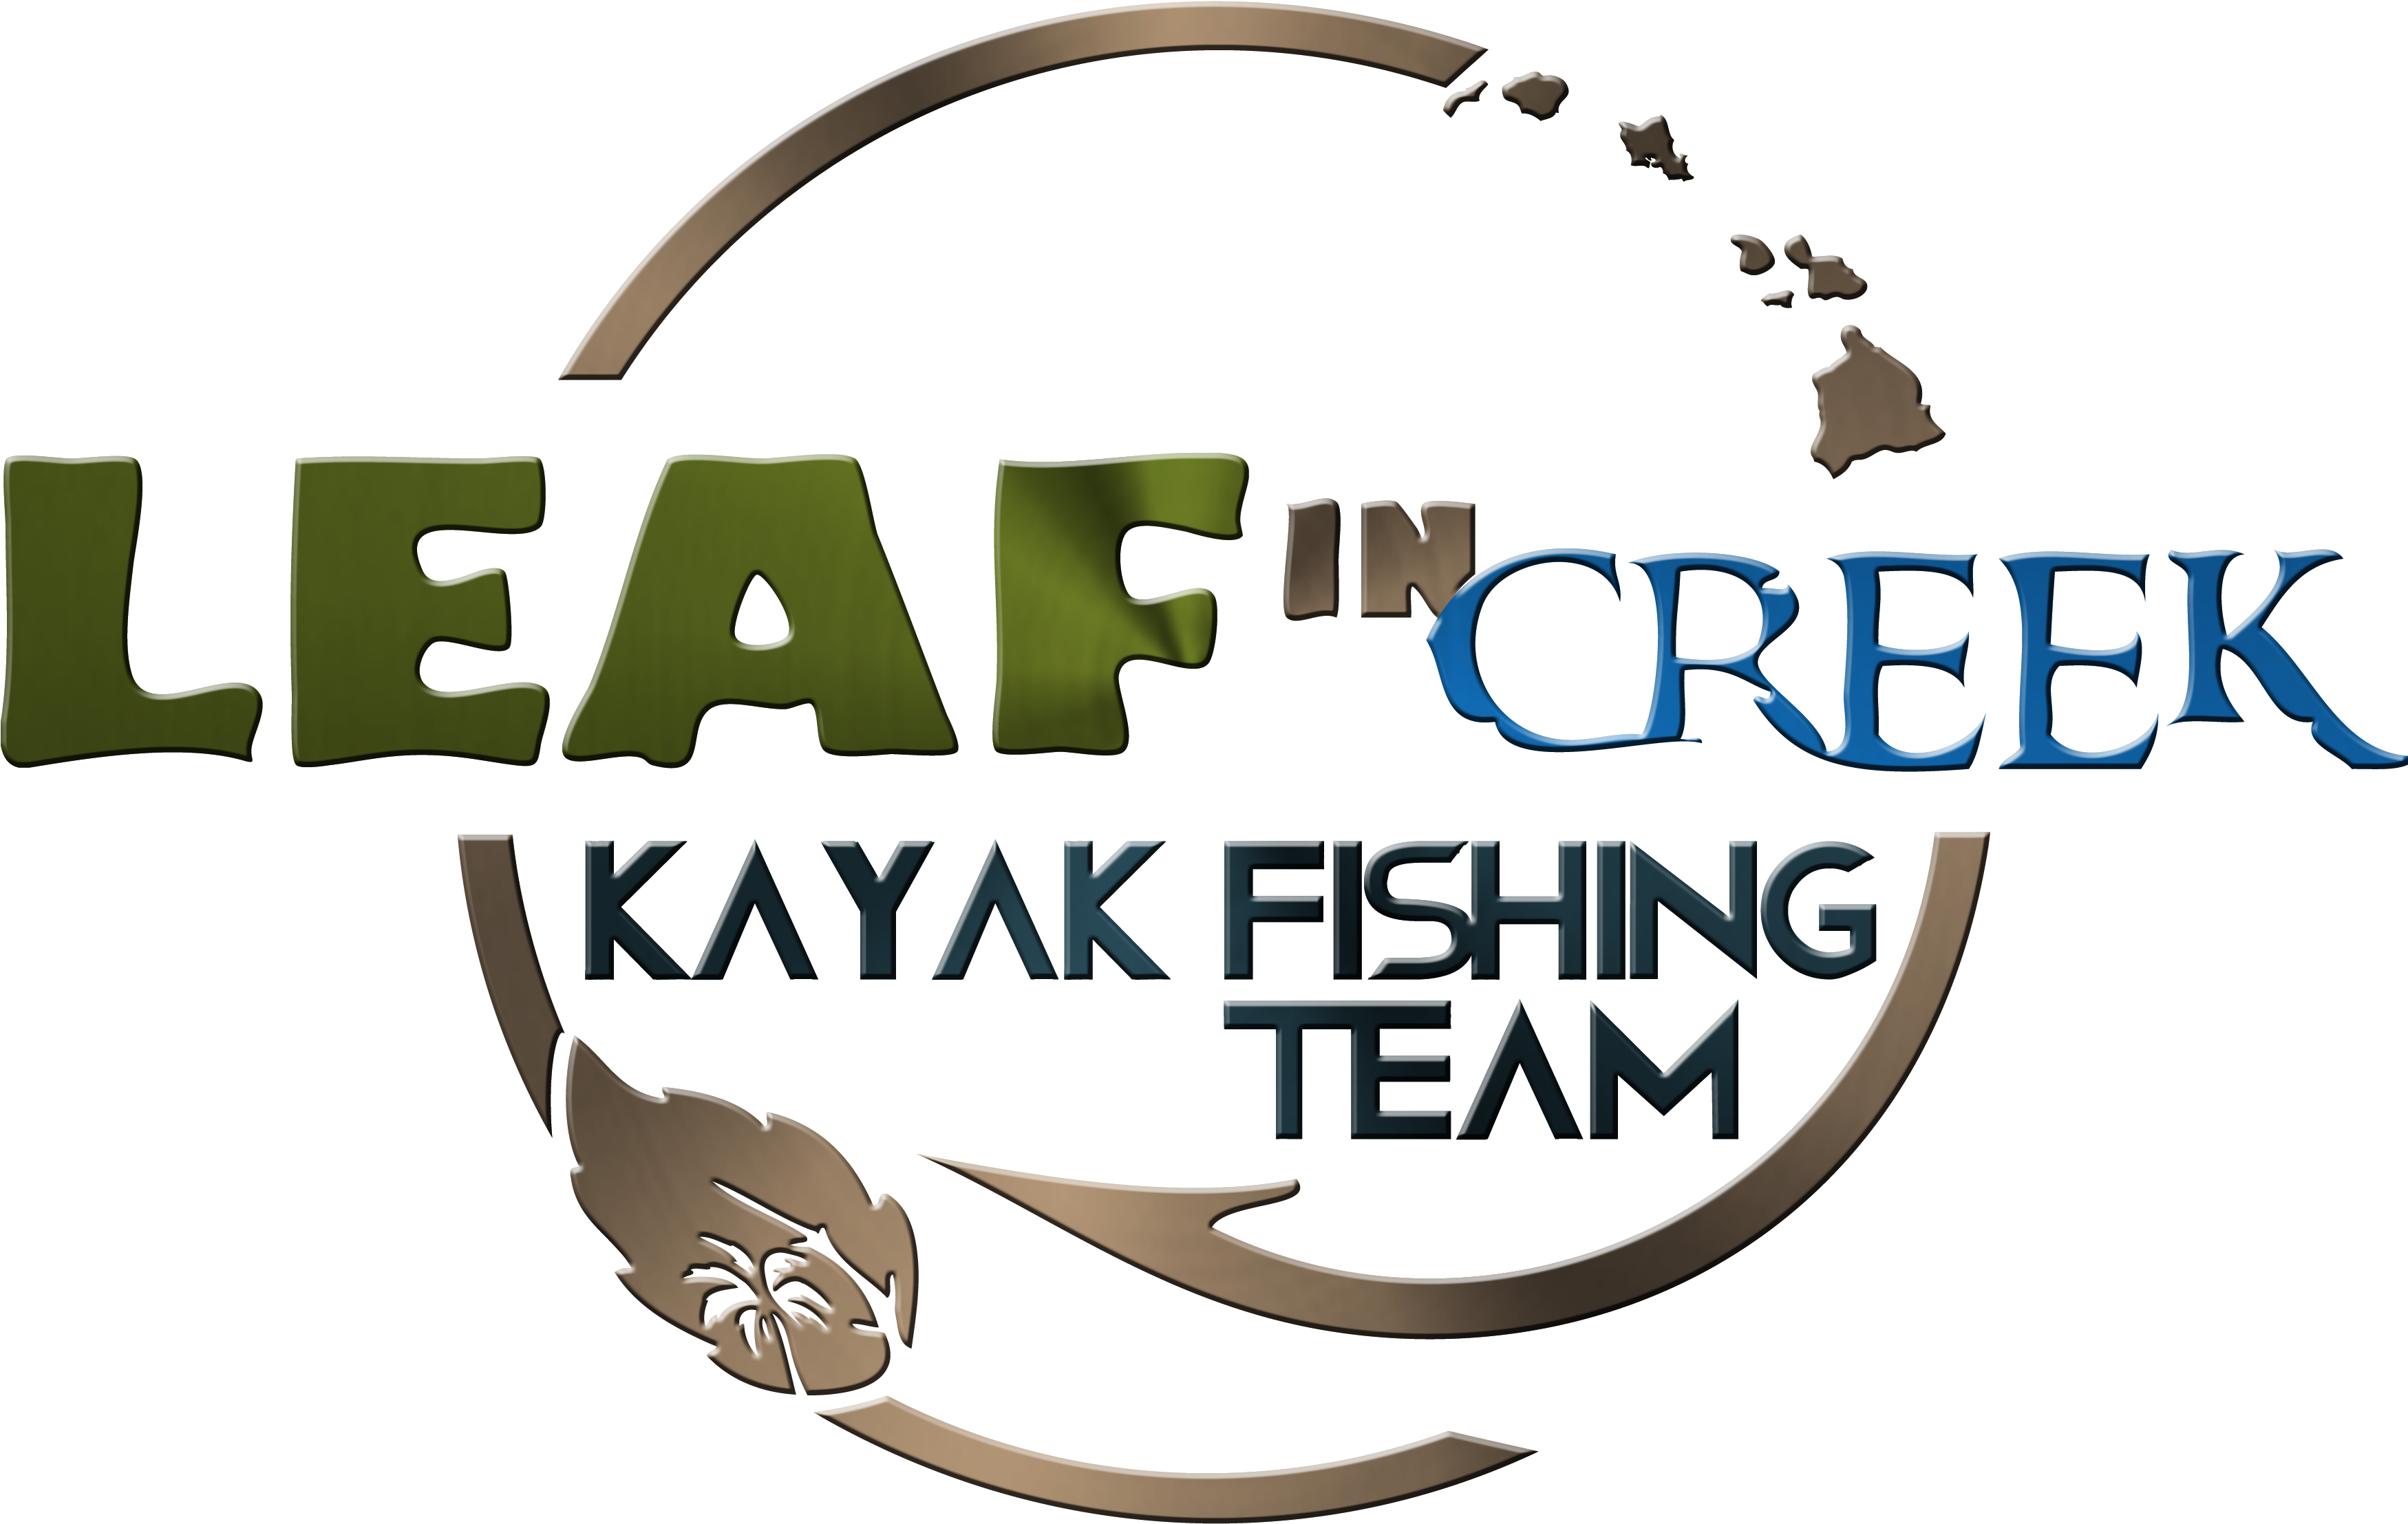 Текст рыбная ловля. Логотип кайак. Fish logo. Ace Fishing Crew logo. Kru PNG.